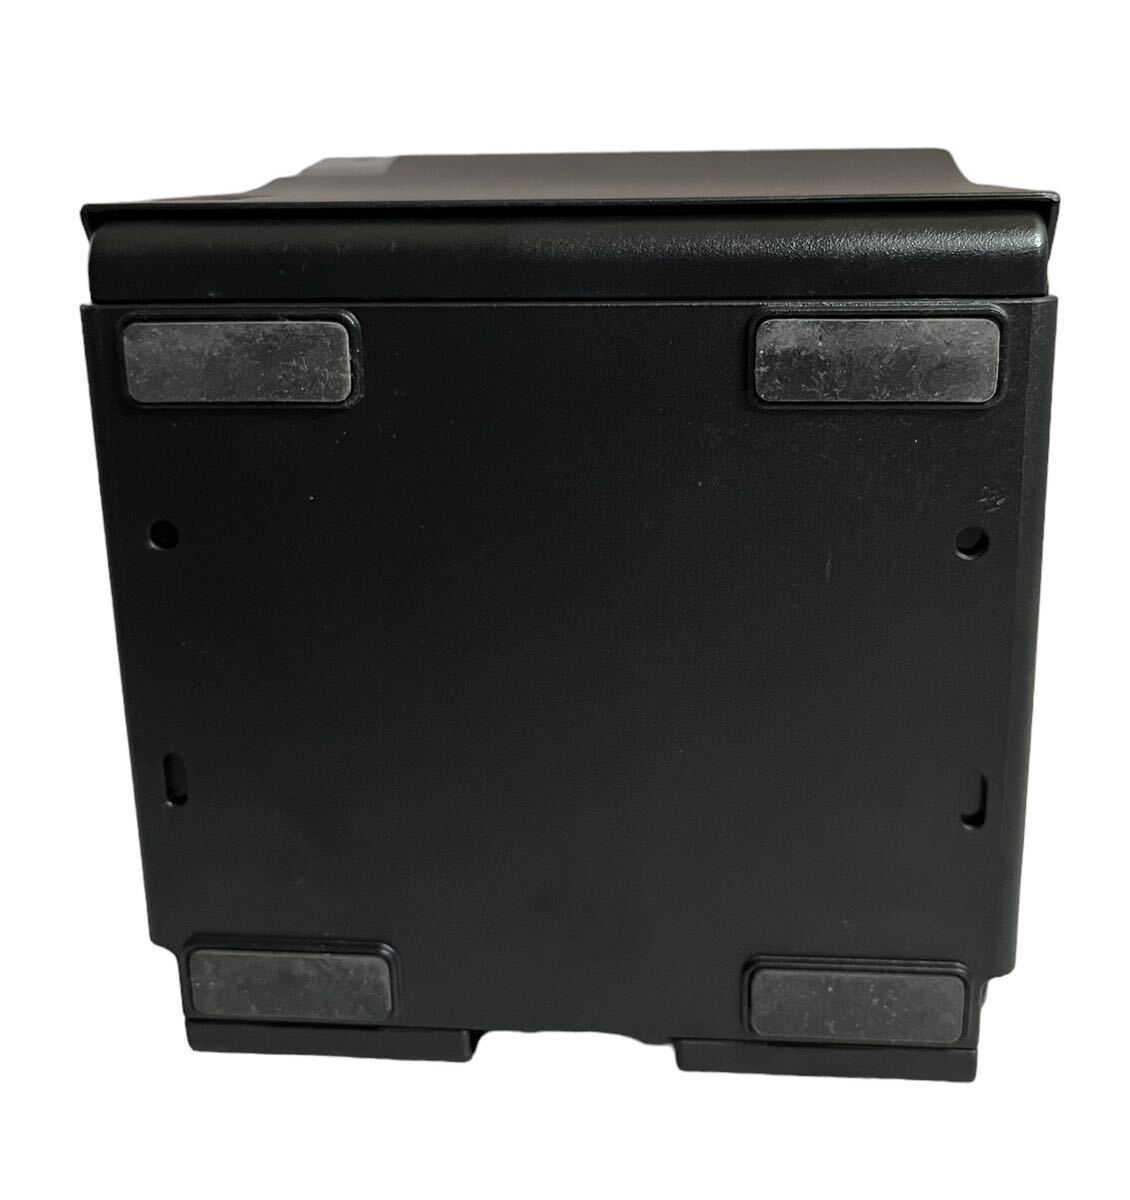 [EPSON| Epson ]re сиденье принтер M335B б/у прекрасный товар для бизнеса черный re сиденье epson принтер MODEL